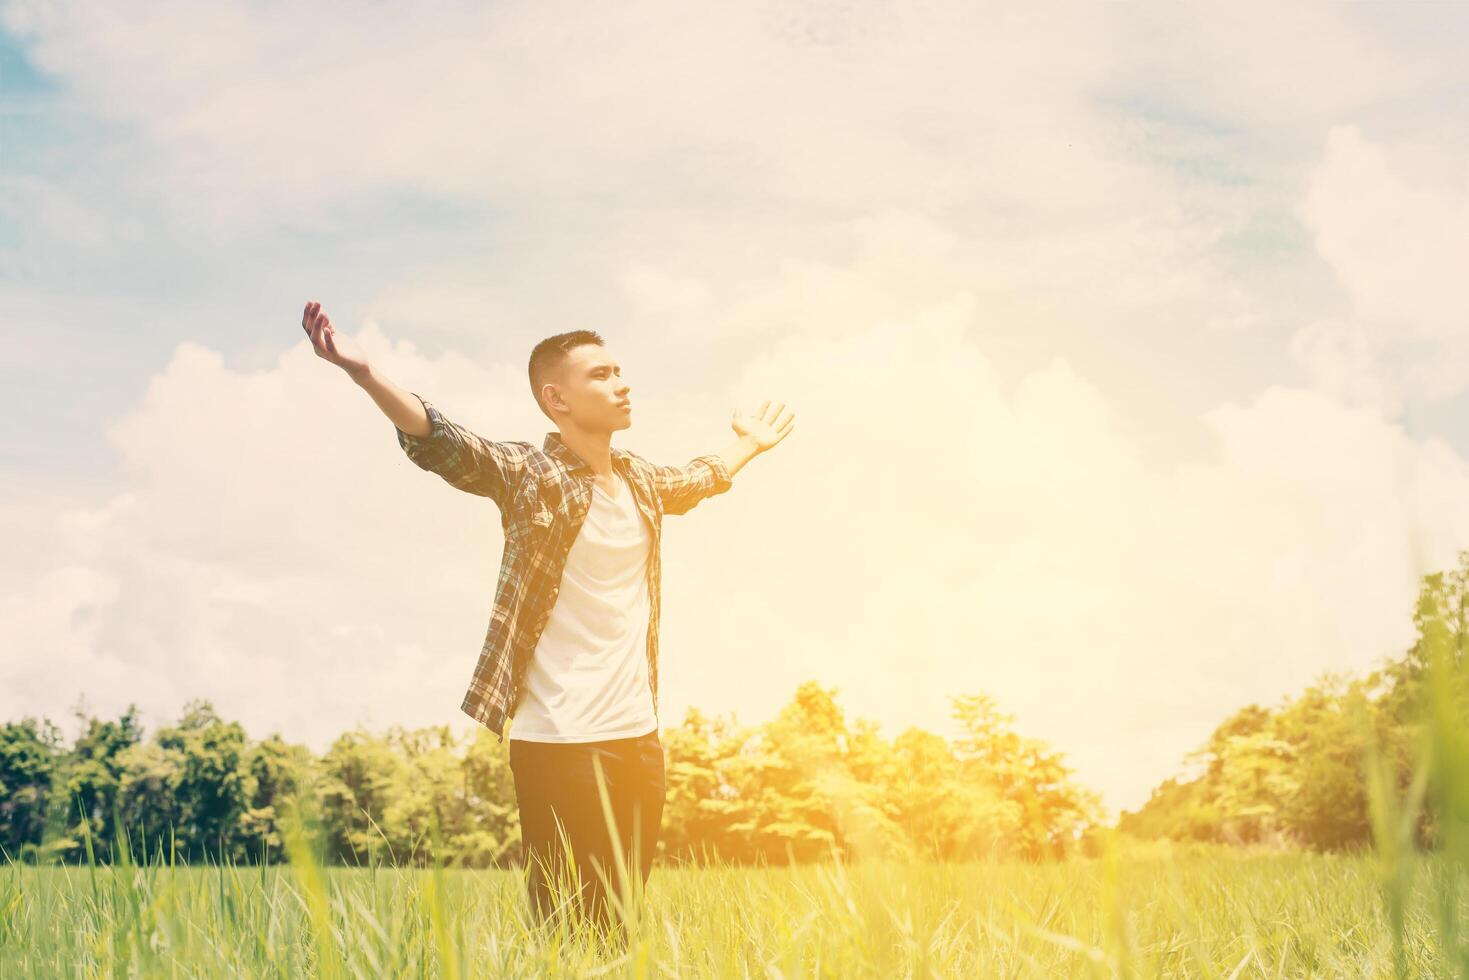 vrijheid jonge tiener man die zijn armen uitstrekt in de lucht genieten en blij met frisse lucht op grasland. foto